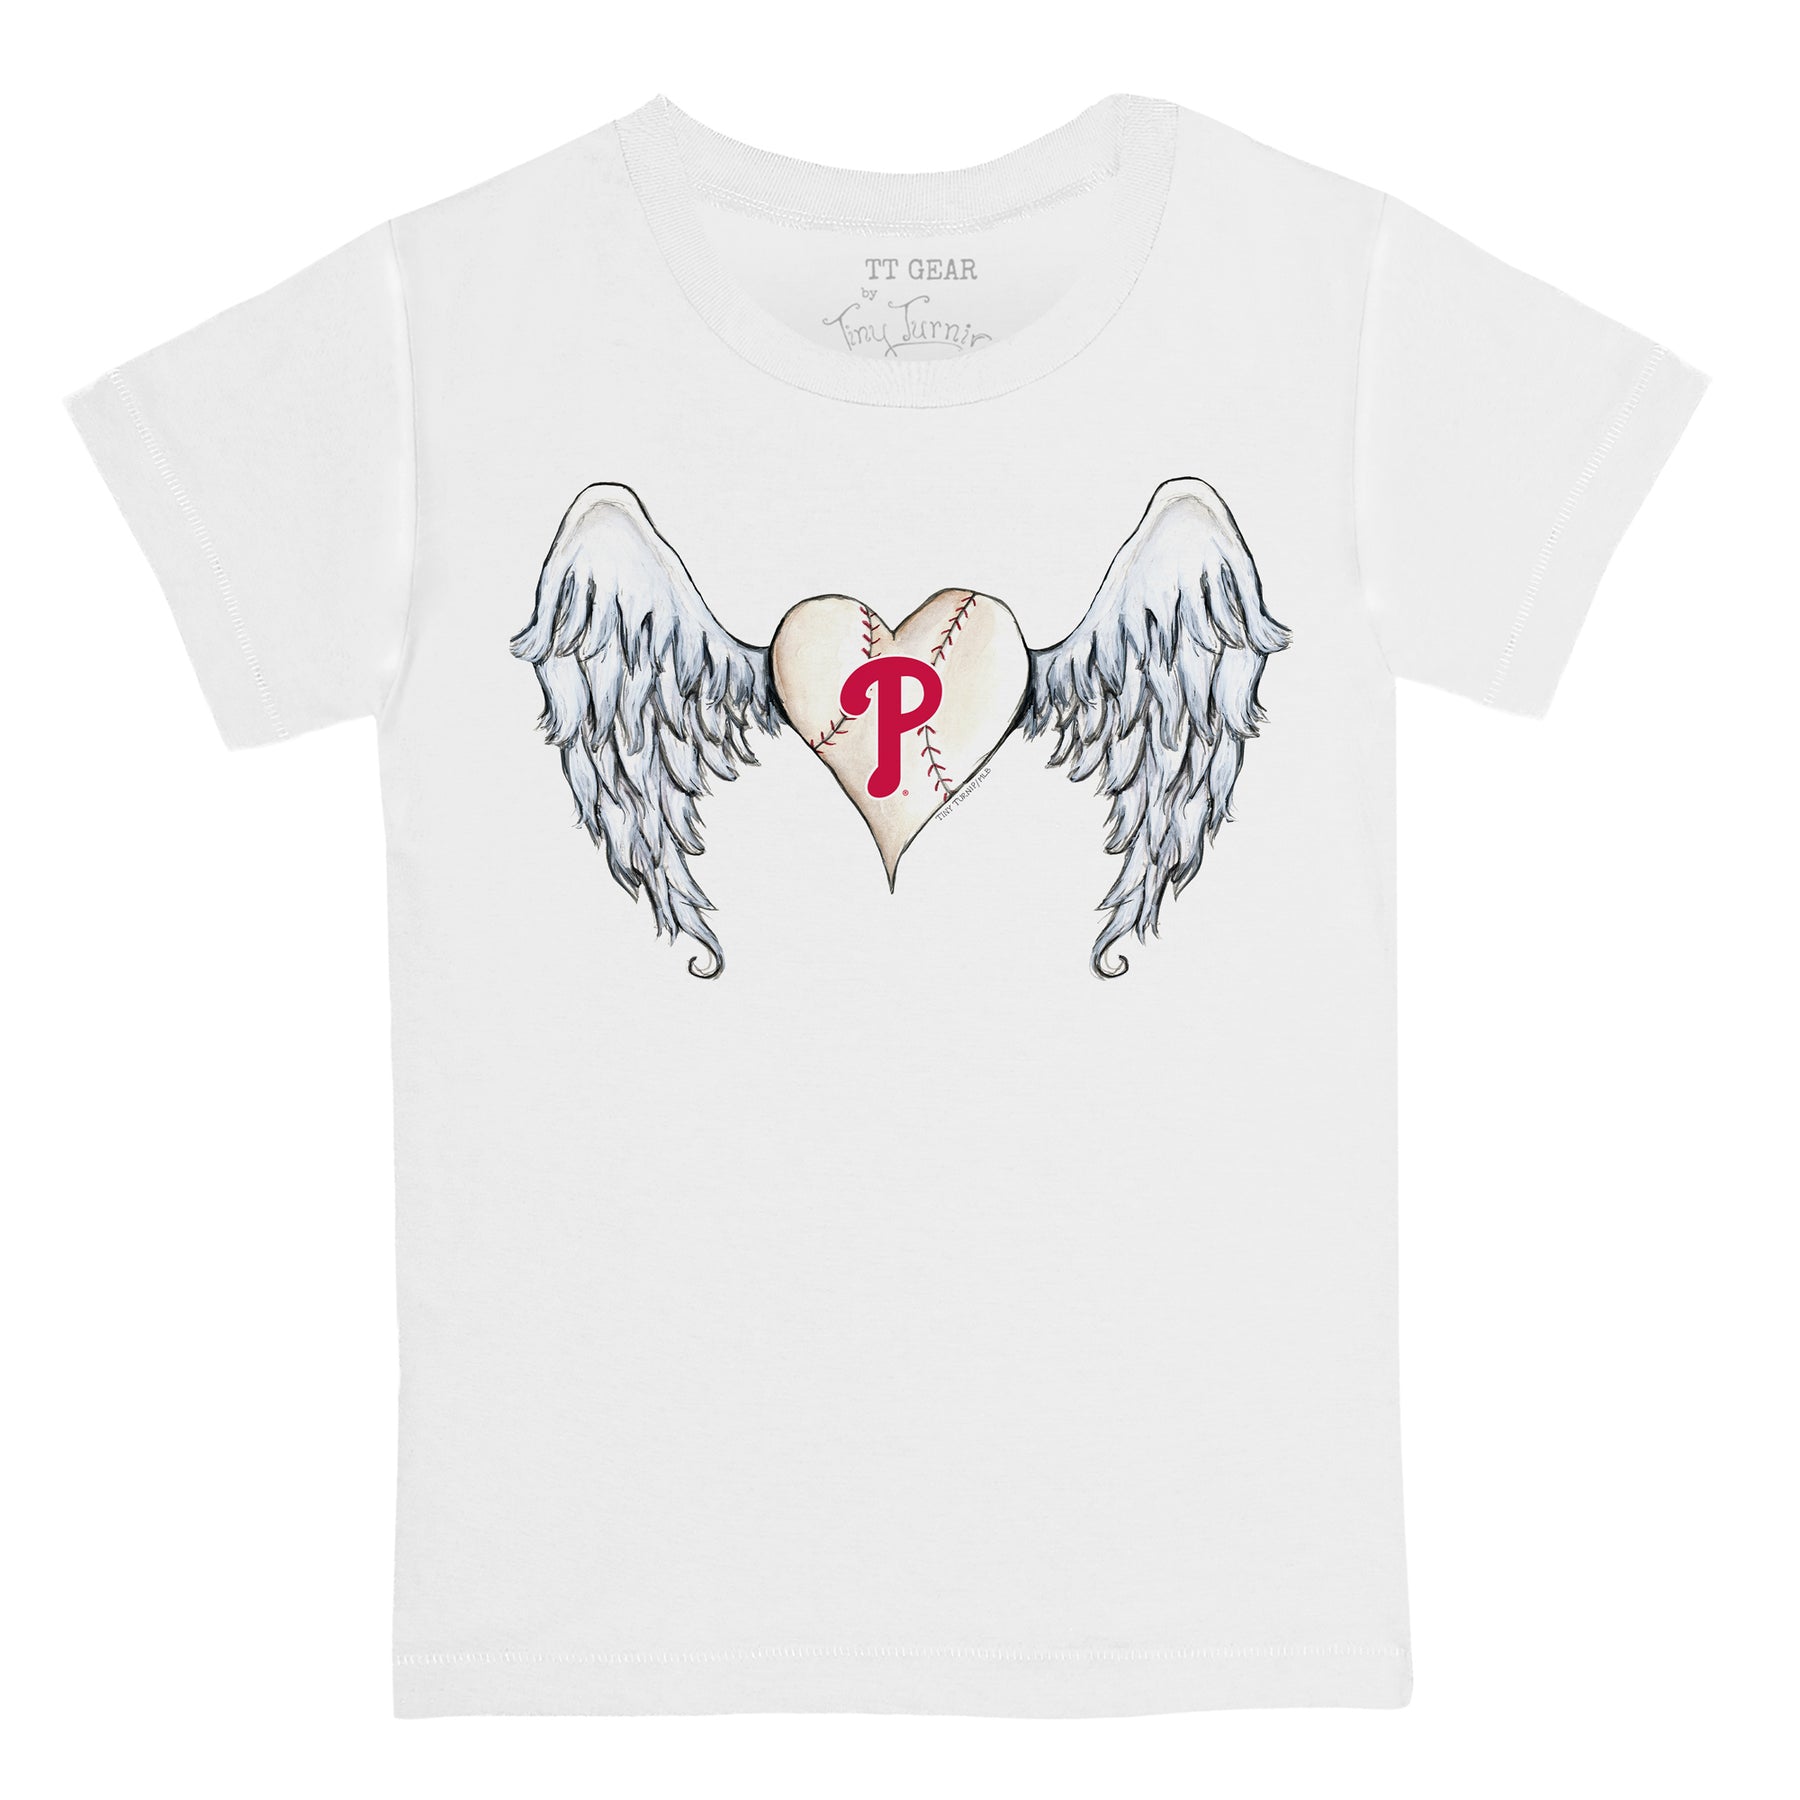 Women's Tiny Turnip White Philadelphia Phillies Angel Wings T-Shirt